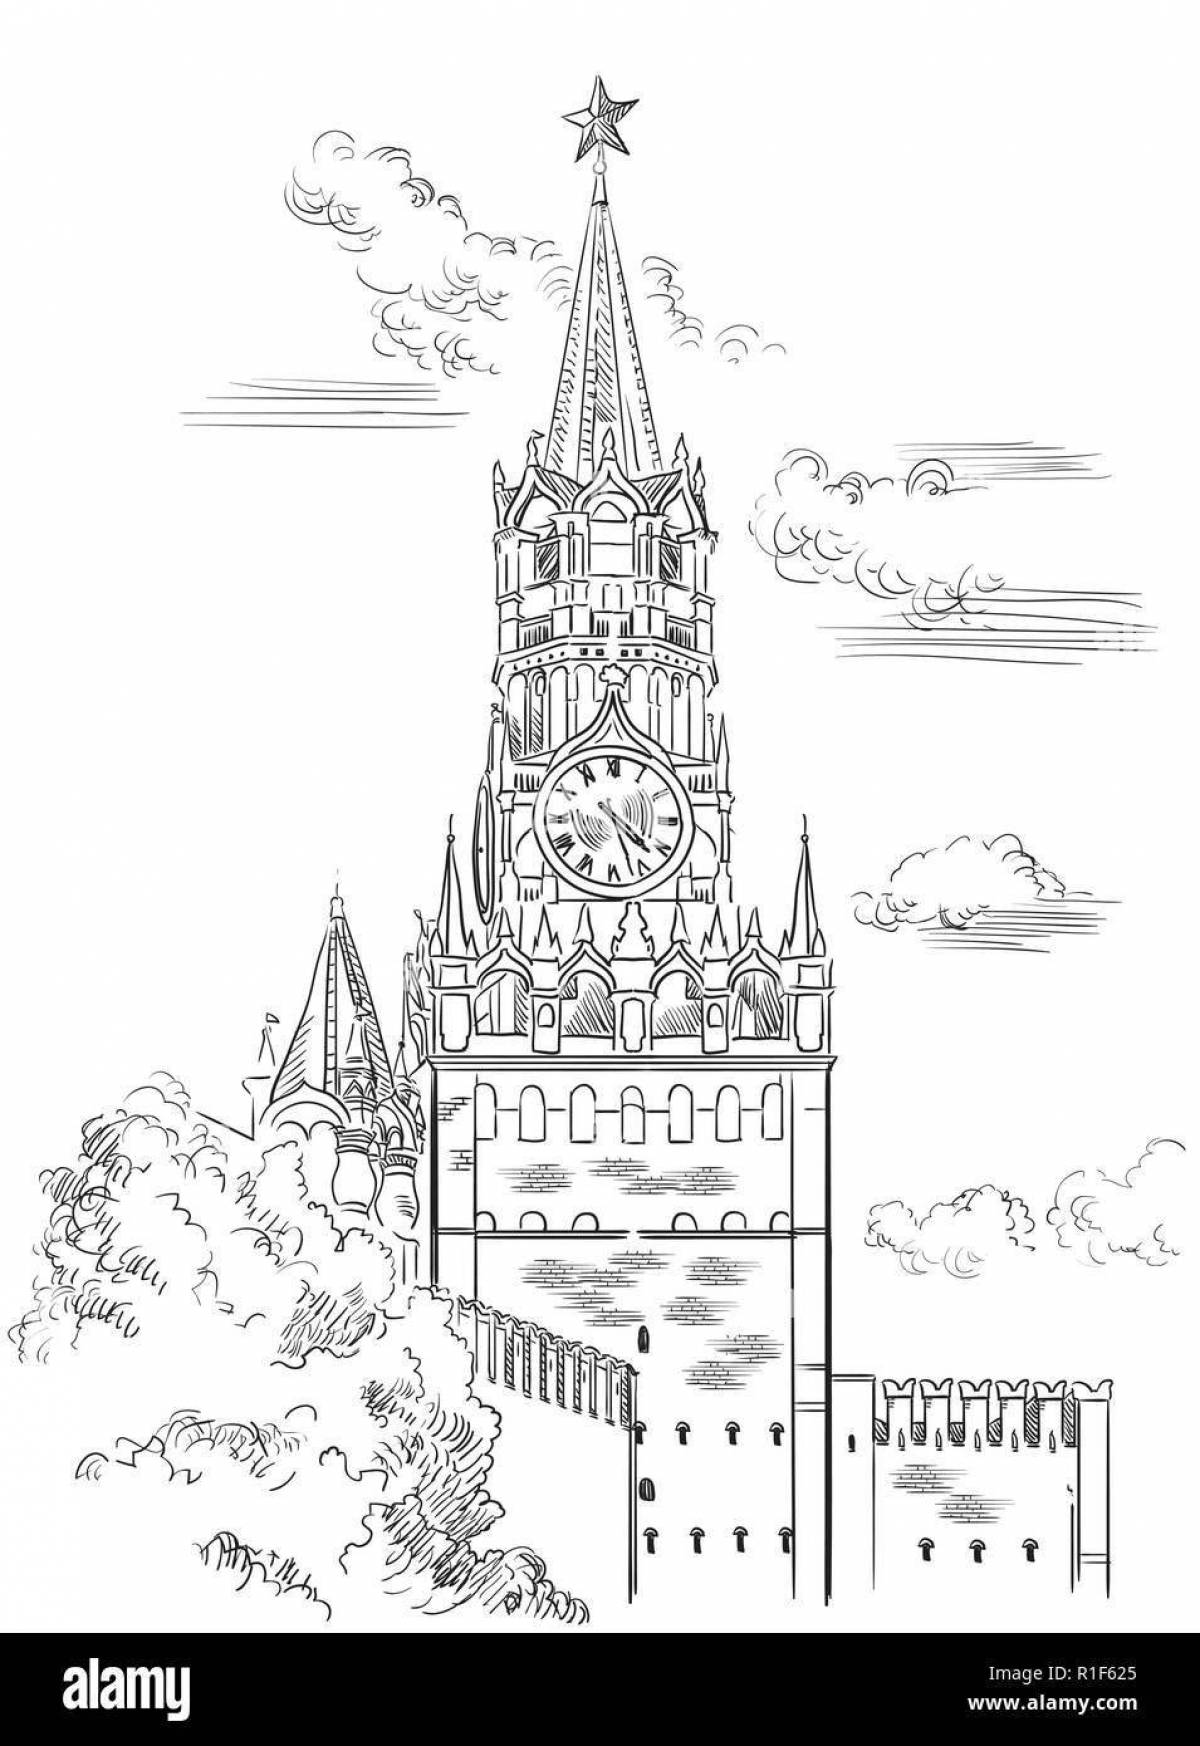 Впечатляющая страница раскраски кремлевской башни